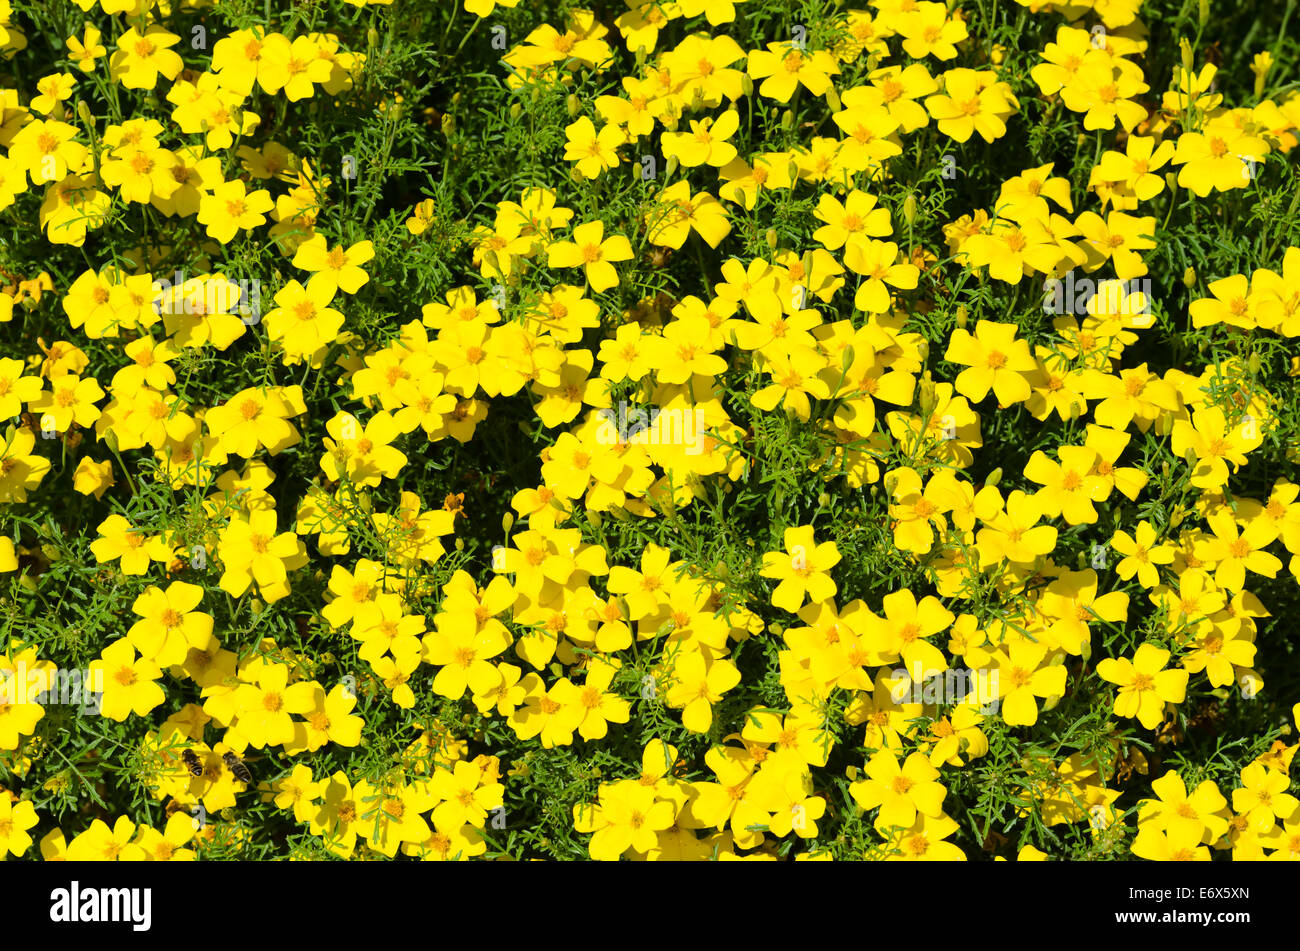 Bright yellow marigolds Stock Photo